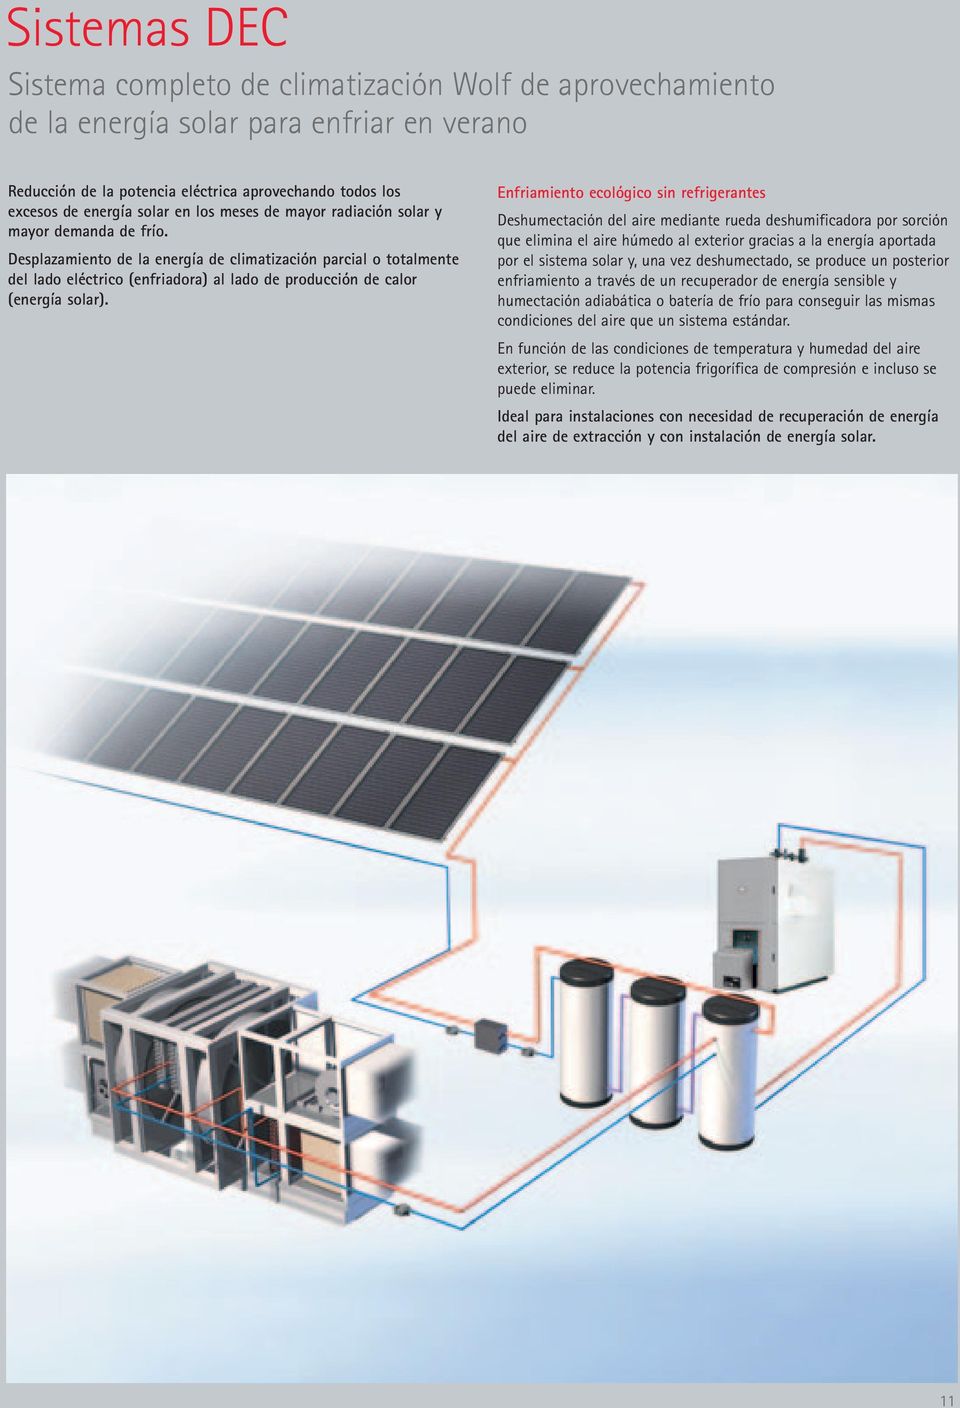 Desplazamiento de la energía de climatización parcial o totalmente del lado eléctrico (enfriadora) al lado de producción de calor (energía solar).